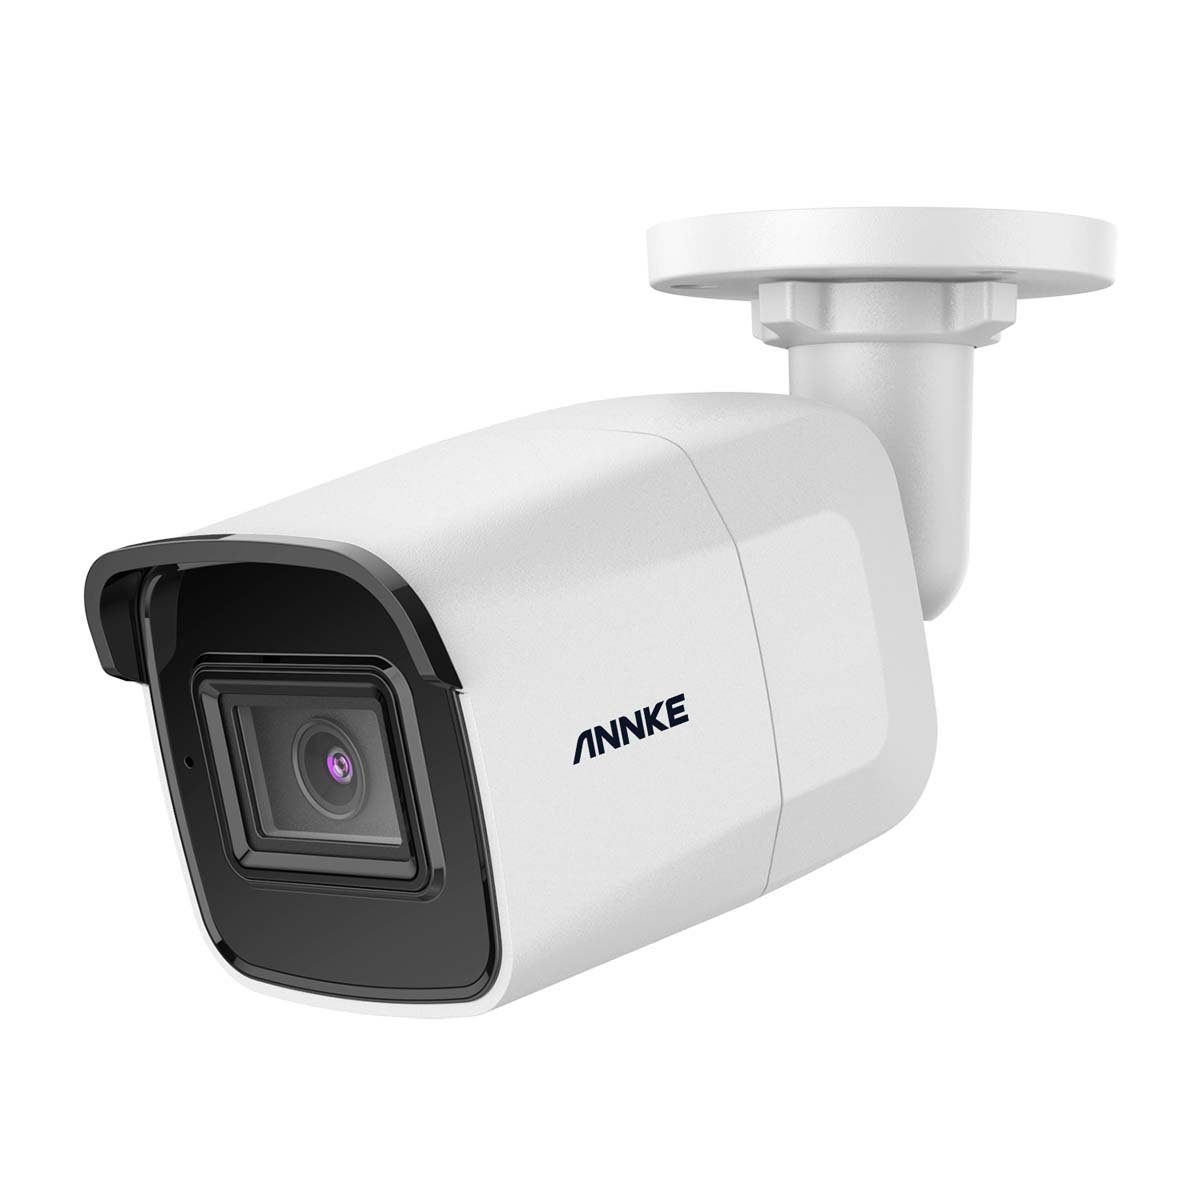 Annke I91BL Intelligente 4K UHD PoE IP Überwachungskamera (Innenbereich,  Außenbereich, ONVIF, Personen- und Fahrzeugerkennung, H.265+  Videokomprimierung, Wetterfest IP67, Integriertes Mikrofon)